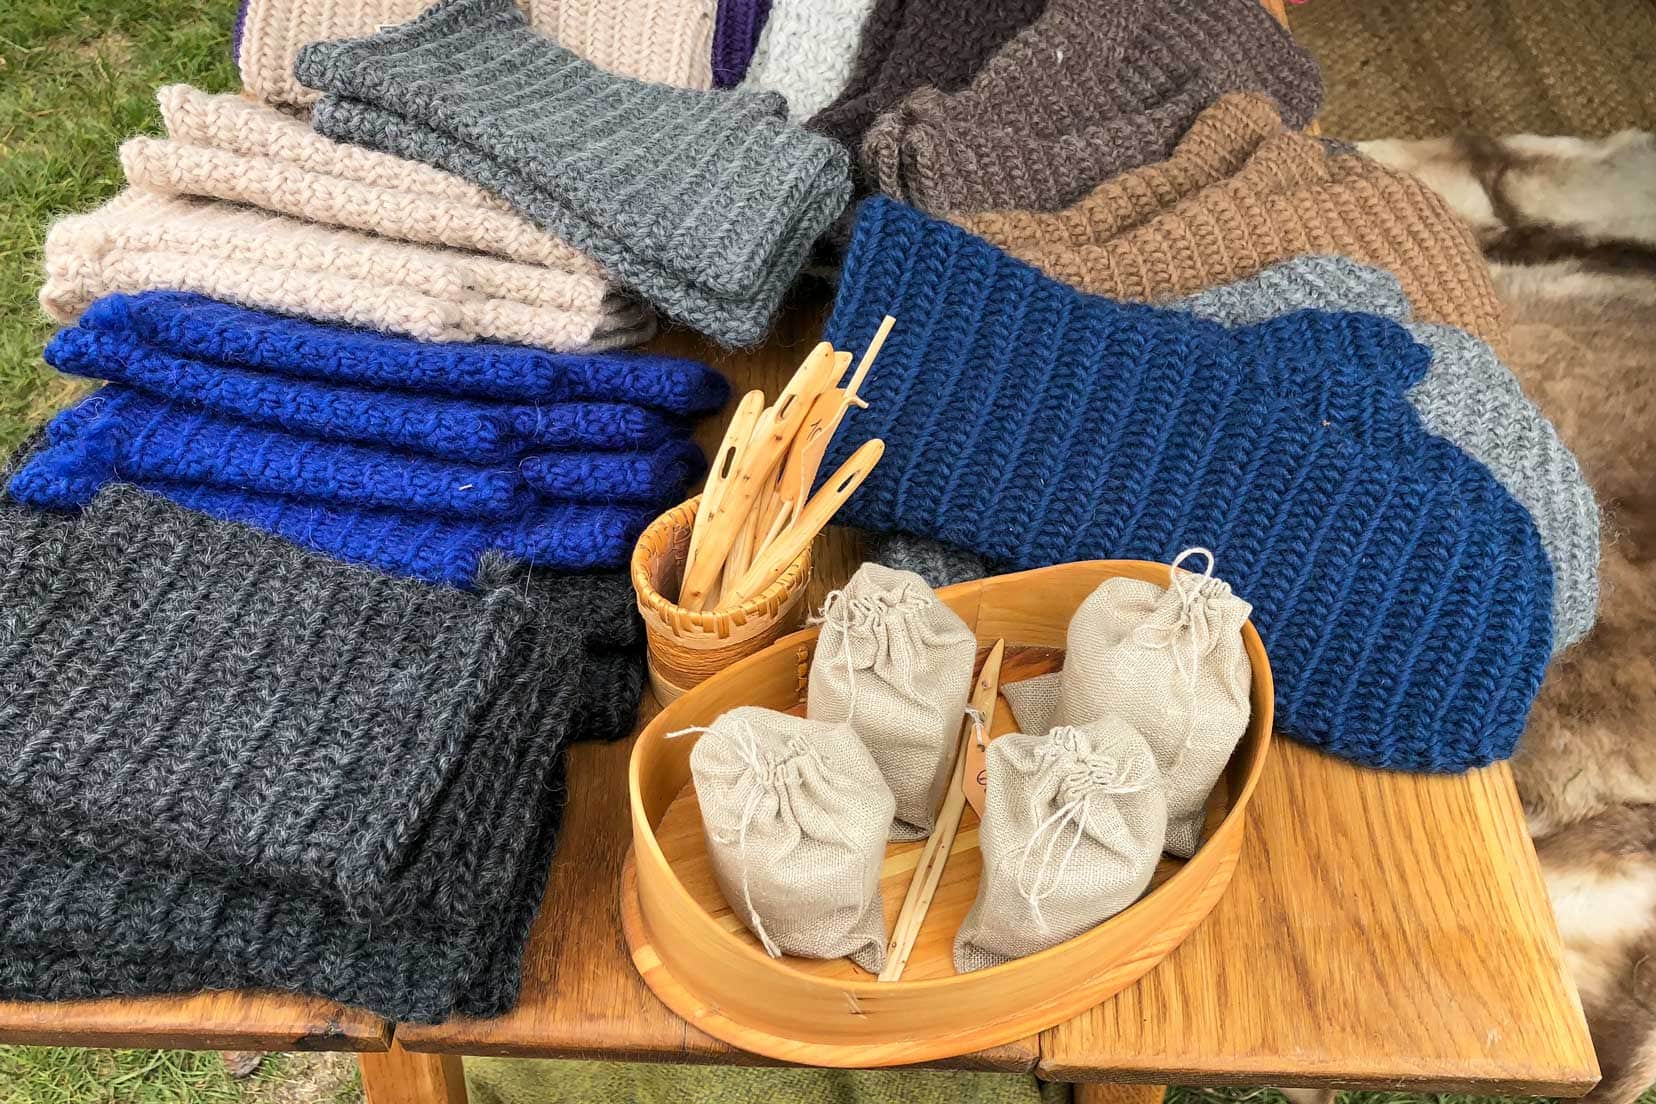 knitting-wares